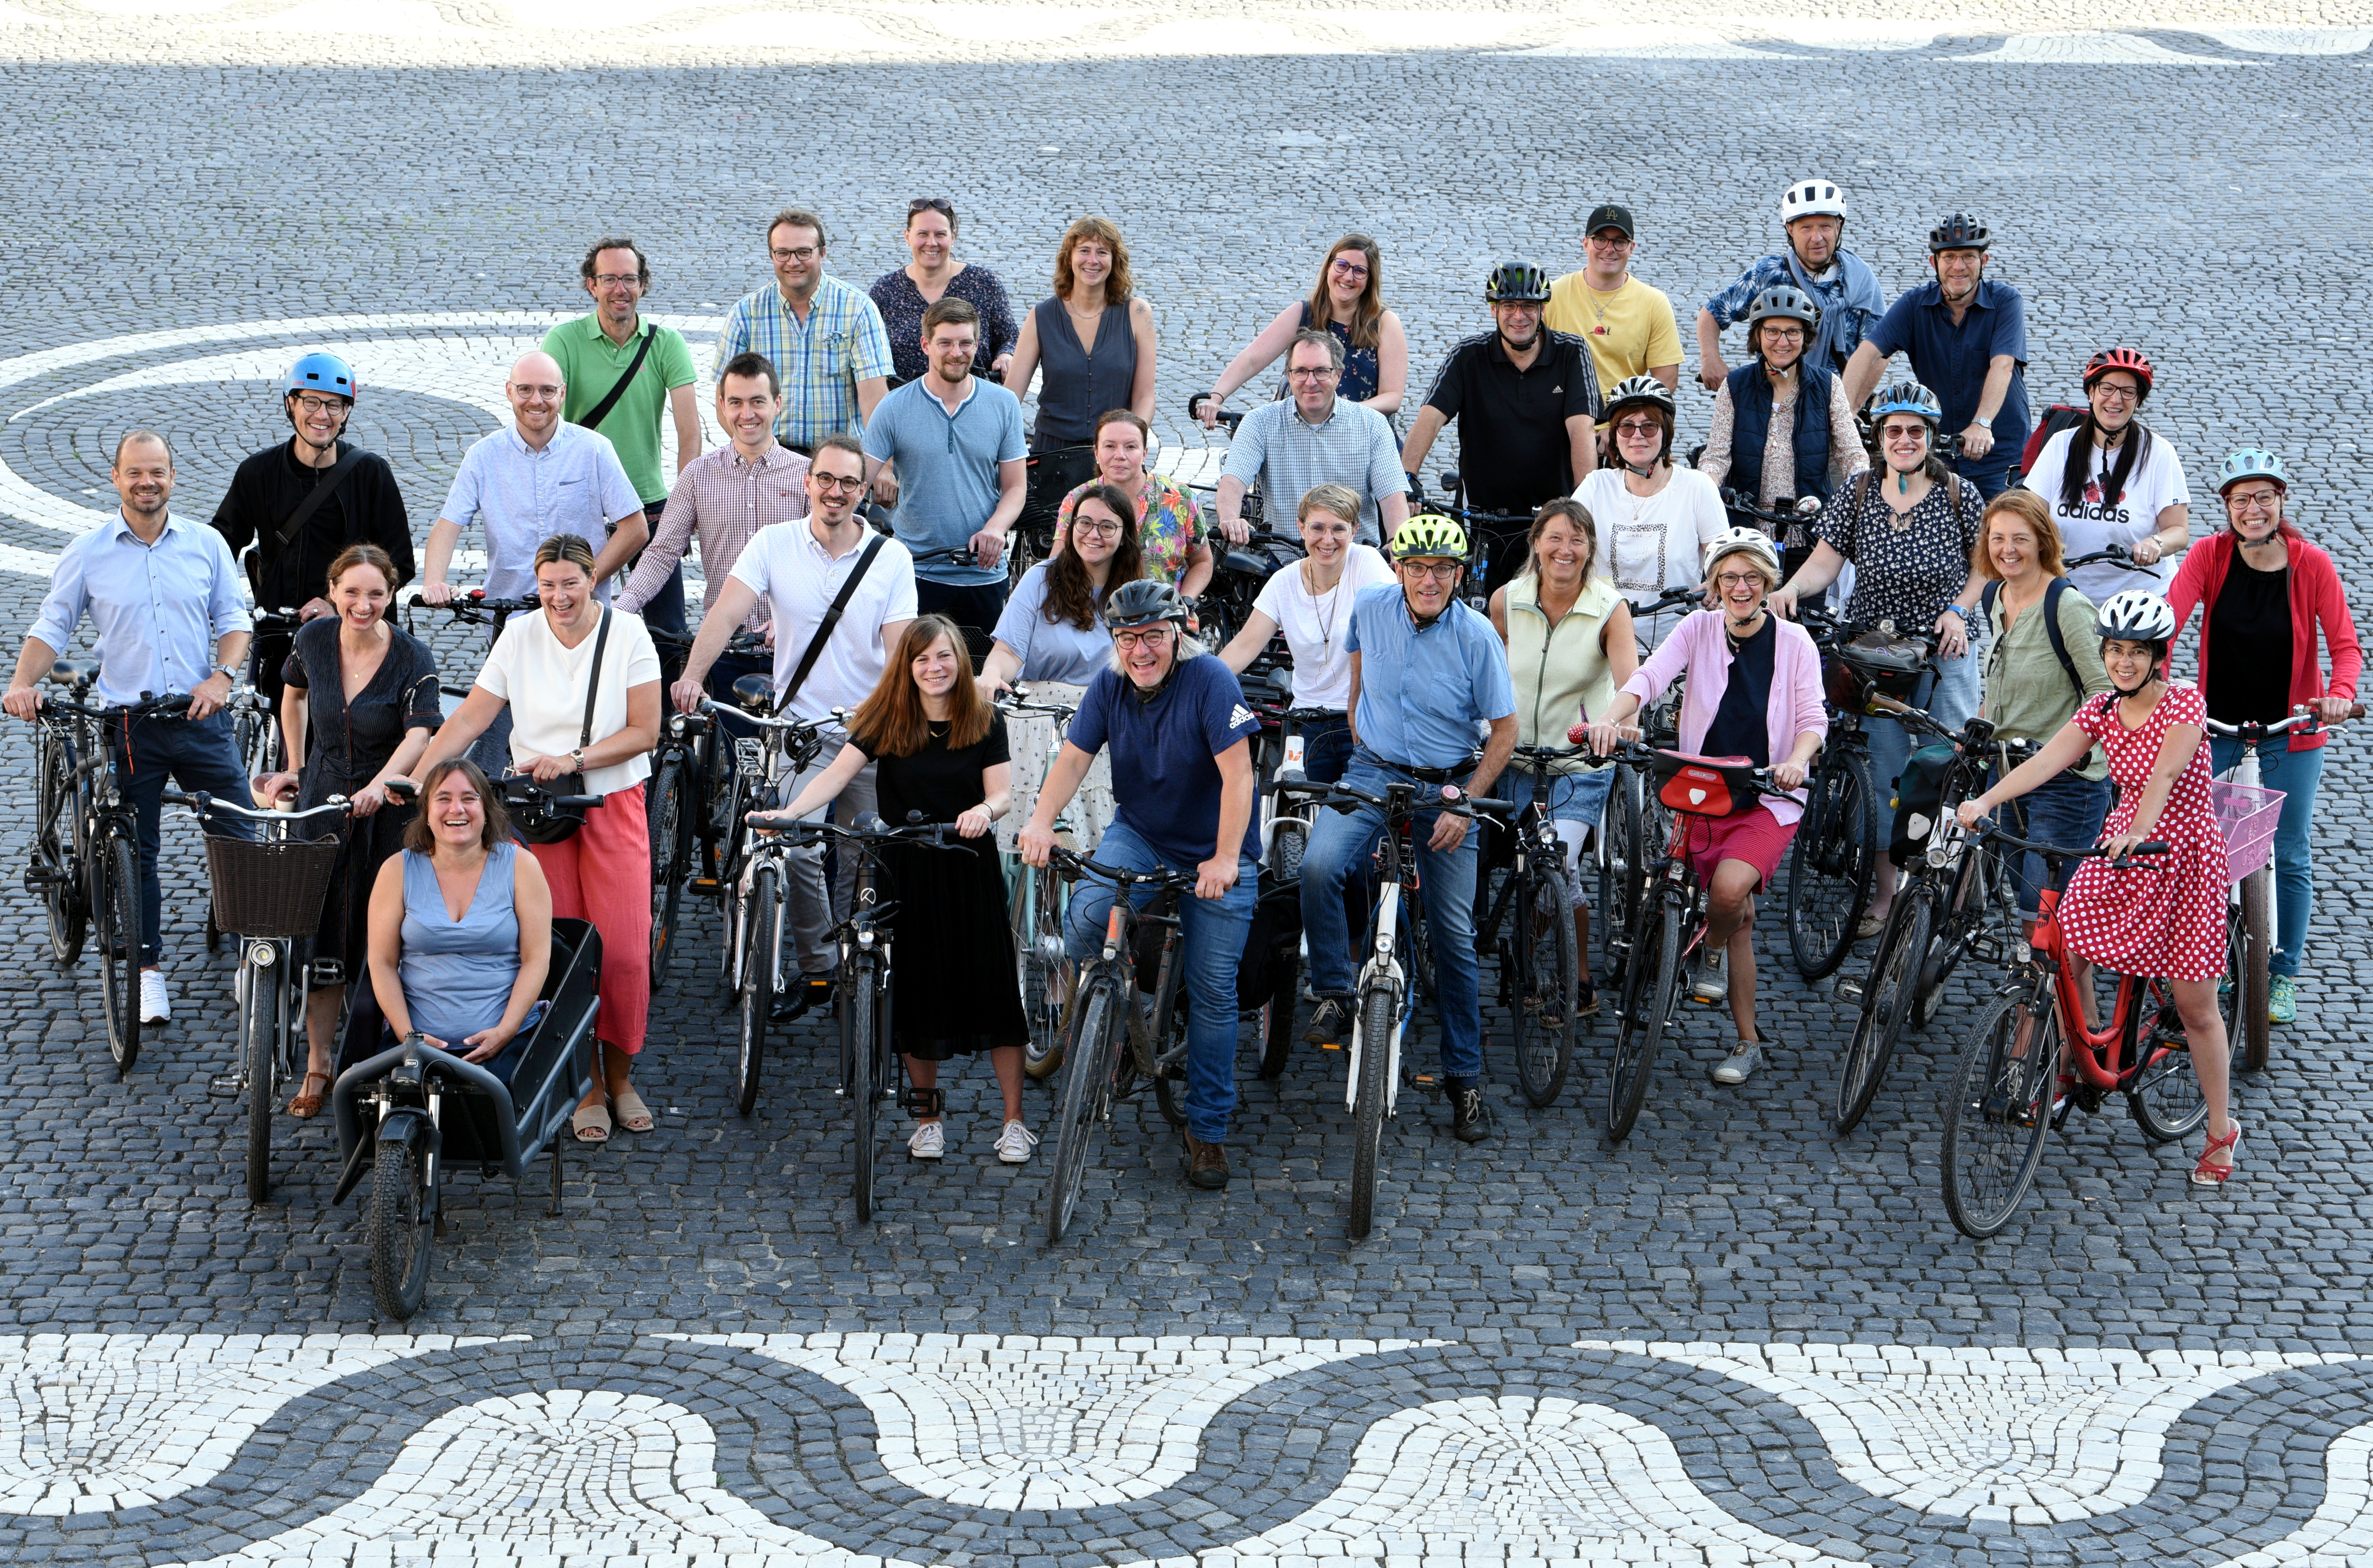 Etwa 35 Frauen und Männer auf Fahrrädern stehen auf dem Rathausplatz zusammen.